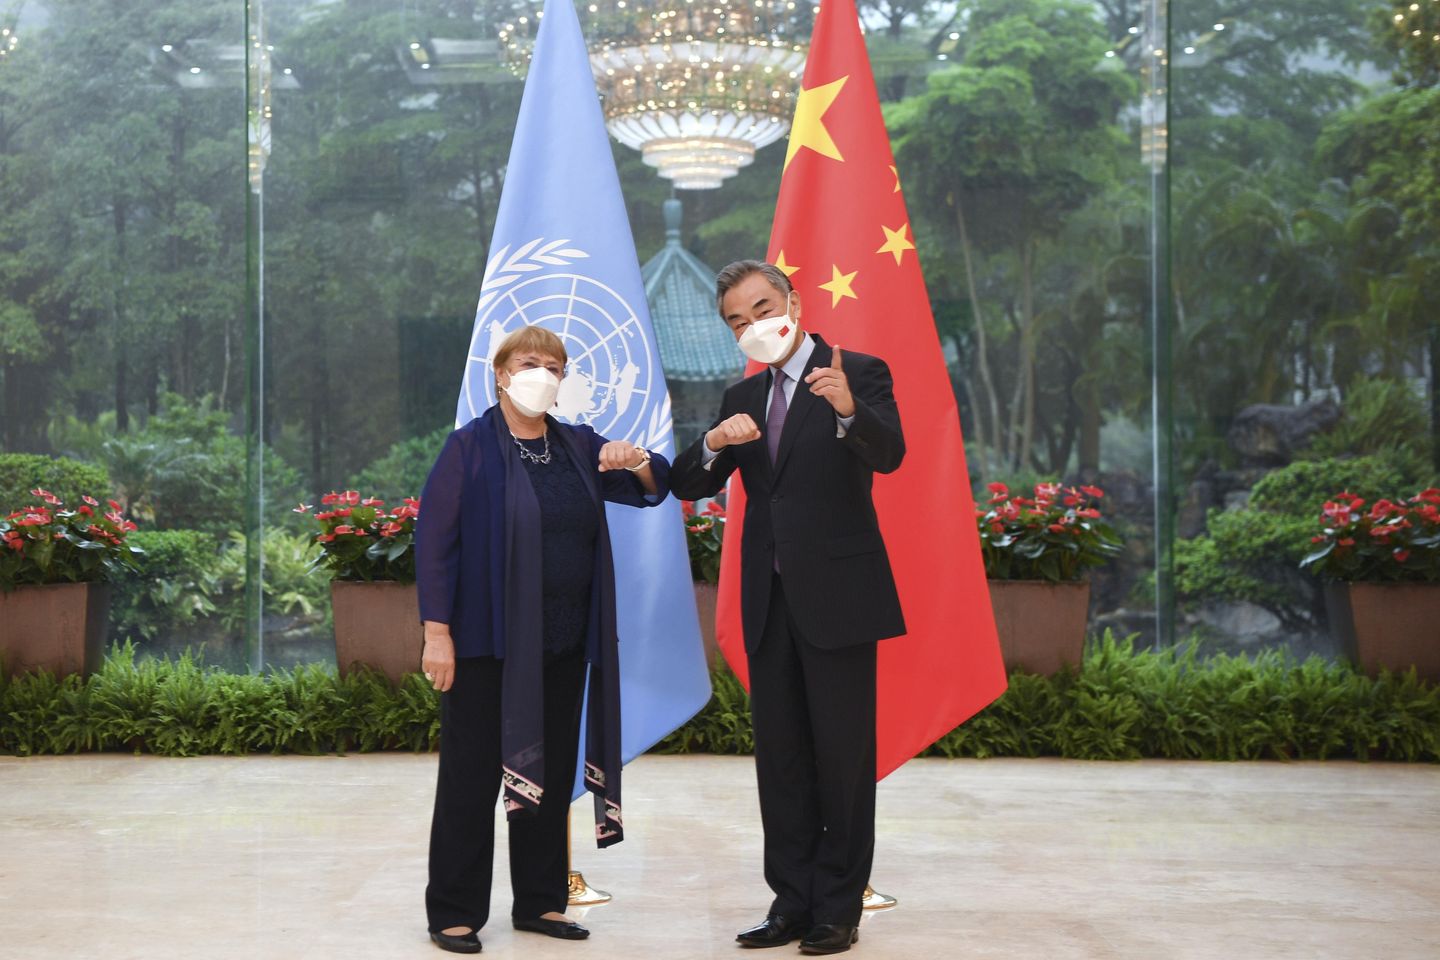 Antony Blinken, Çin'in BM yetkilisinin Sincan ziyareti sırasında 'soykırım' kanıtlarını sakladığını söyledi